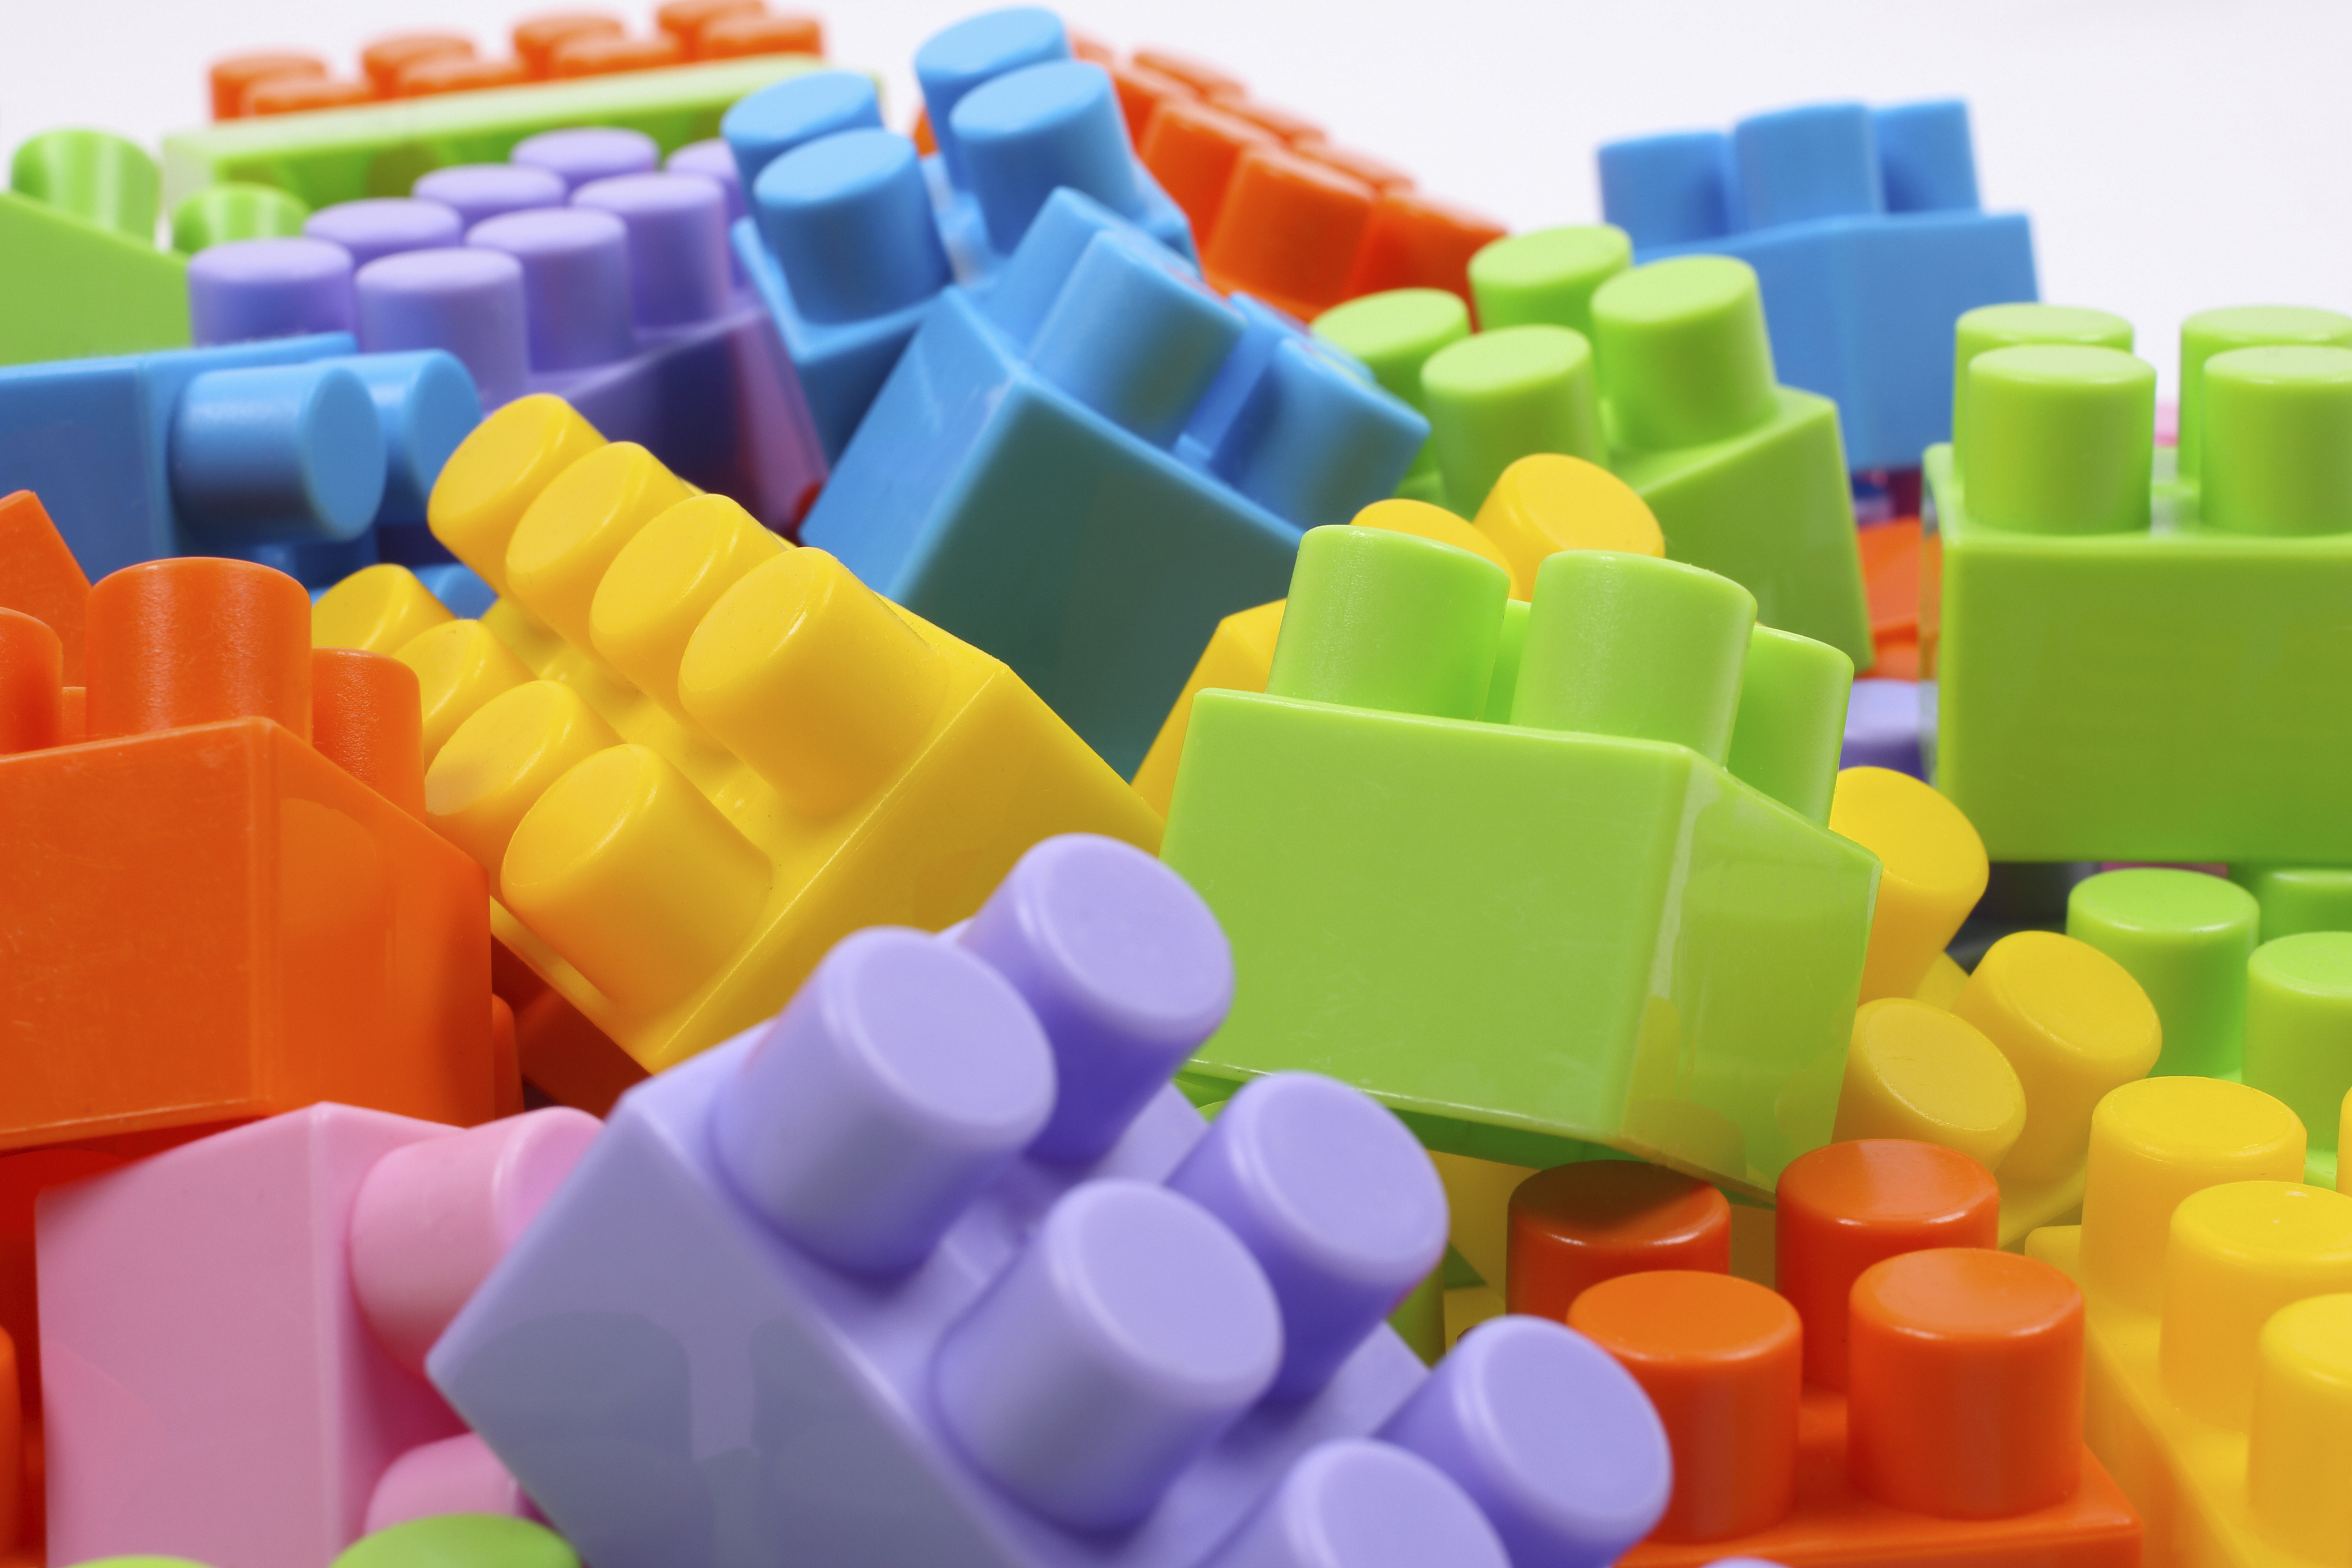 image showing colorful Lego blocks